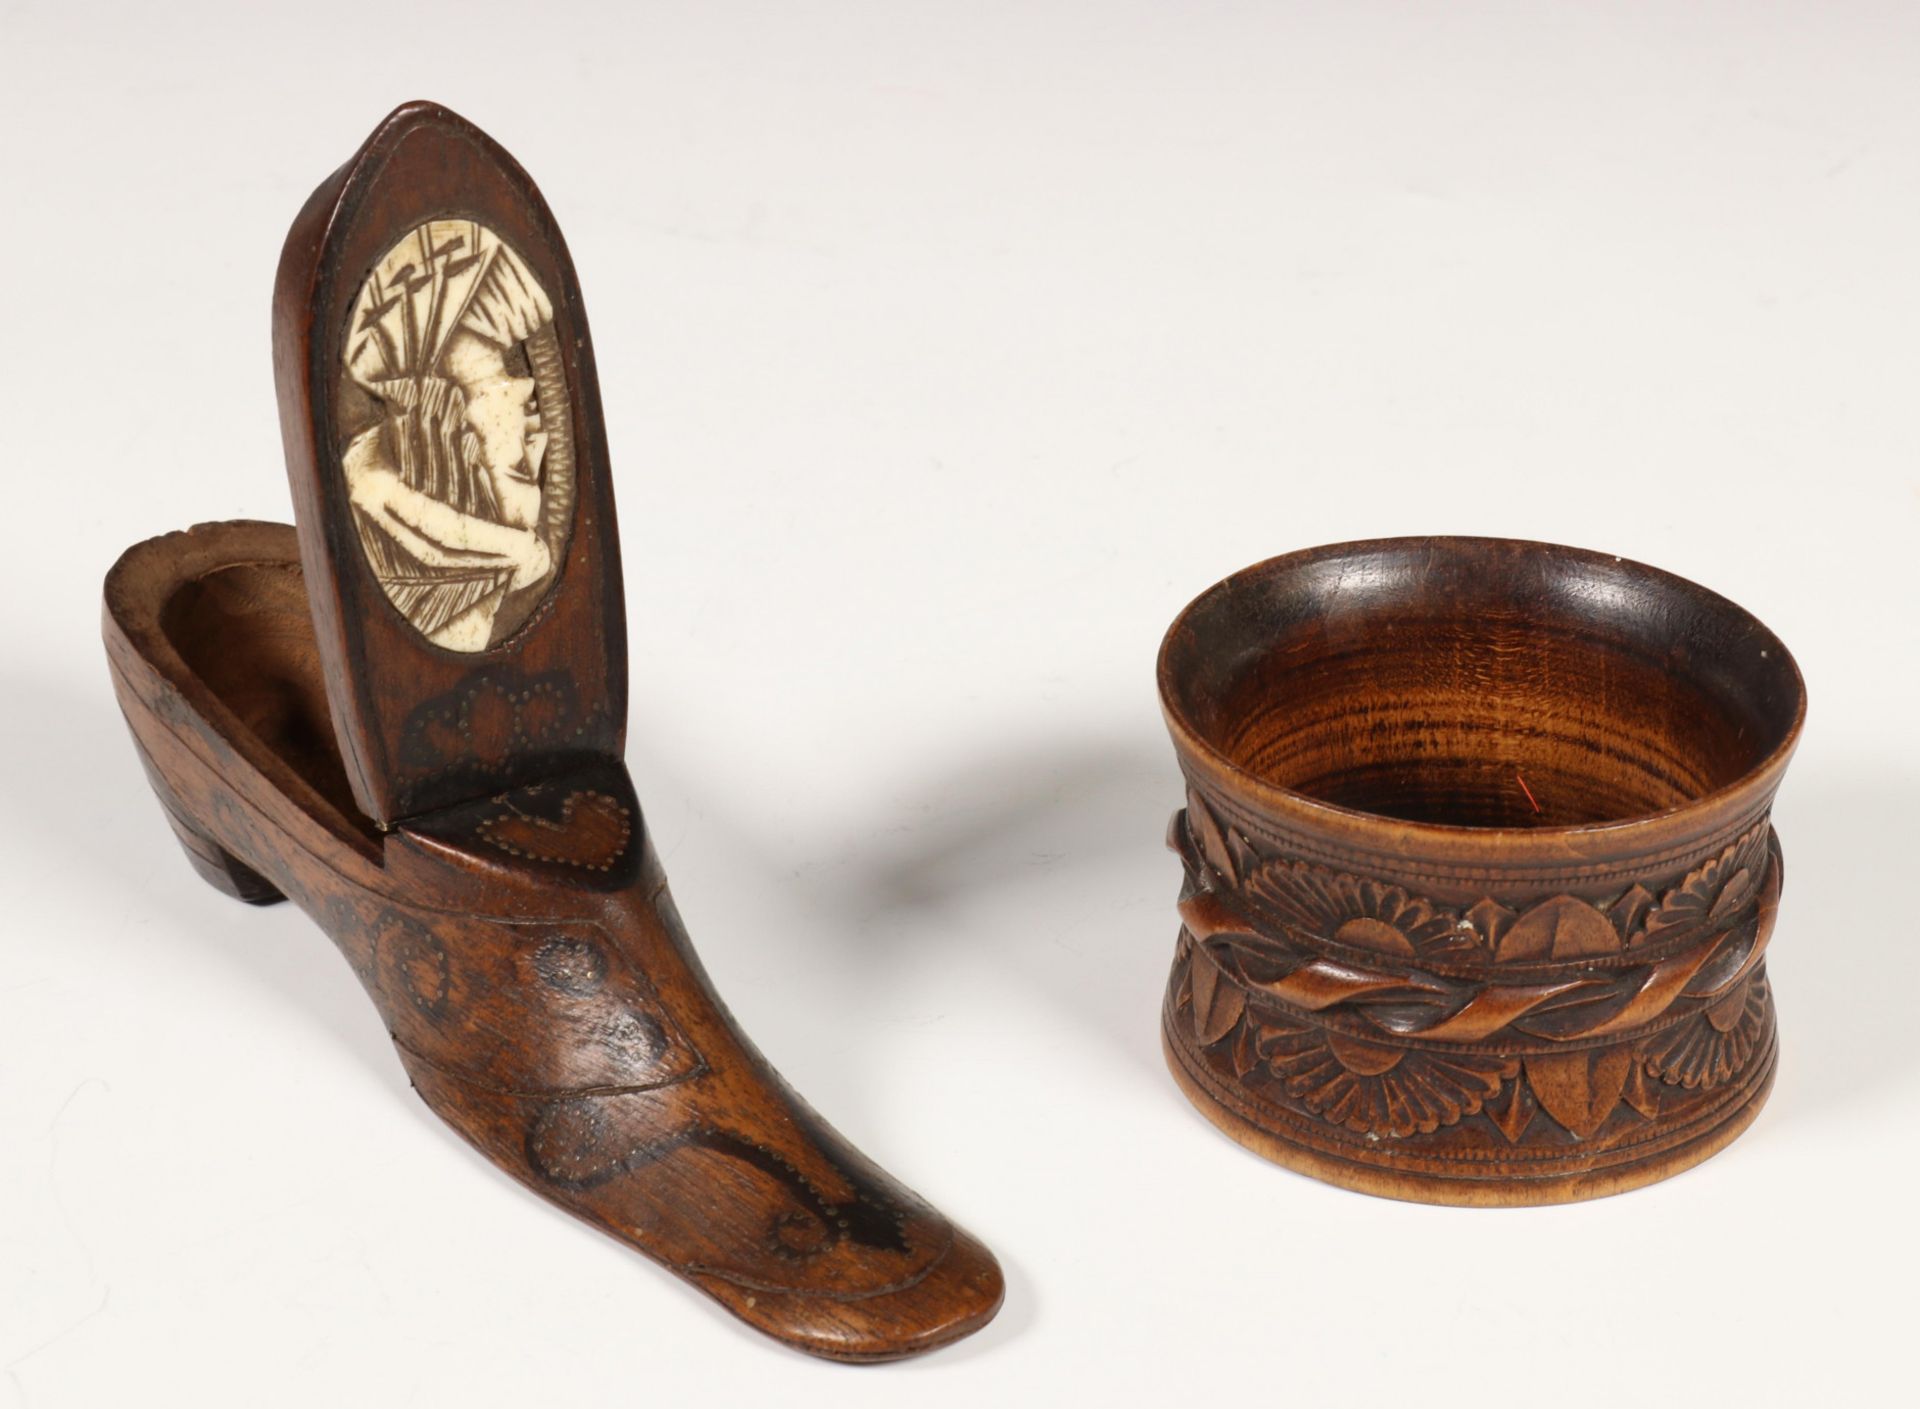 Houten schoenvormig snuifdoosje en houten servetring, ca. 1900.